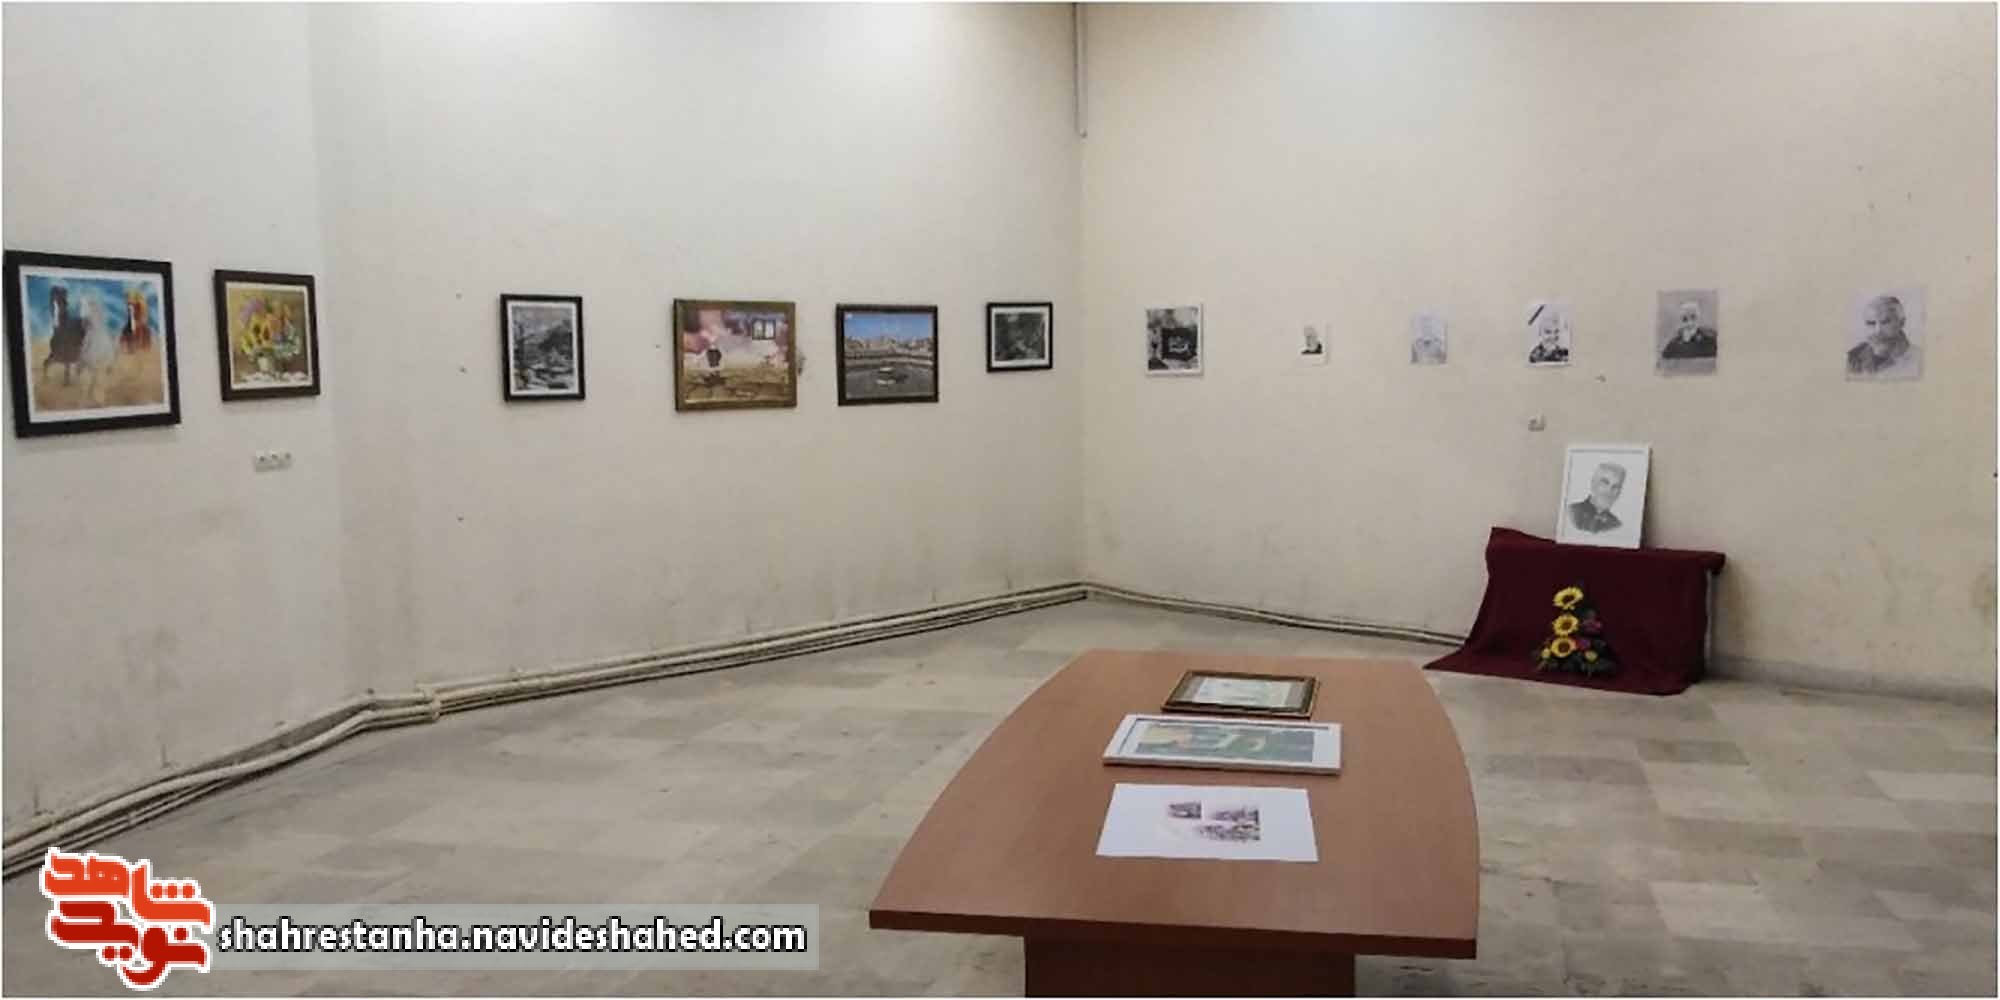 افتتاح نمایشگاه طراحی و نقاشی به مناسبت یکمین سالگرد شهادت سردار دلها در شهرستان قرچک